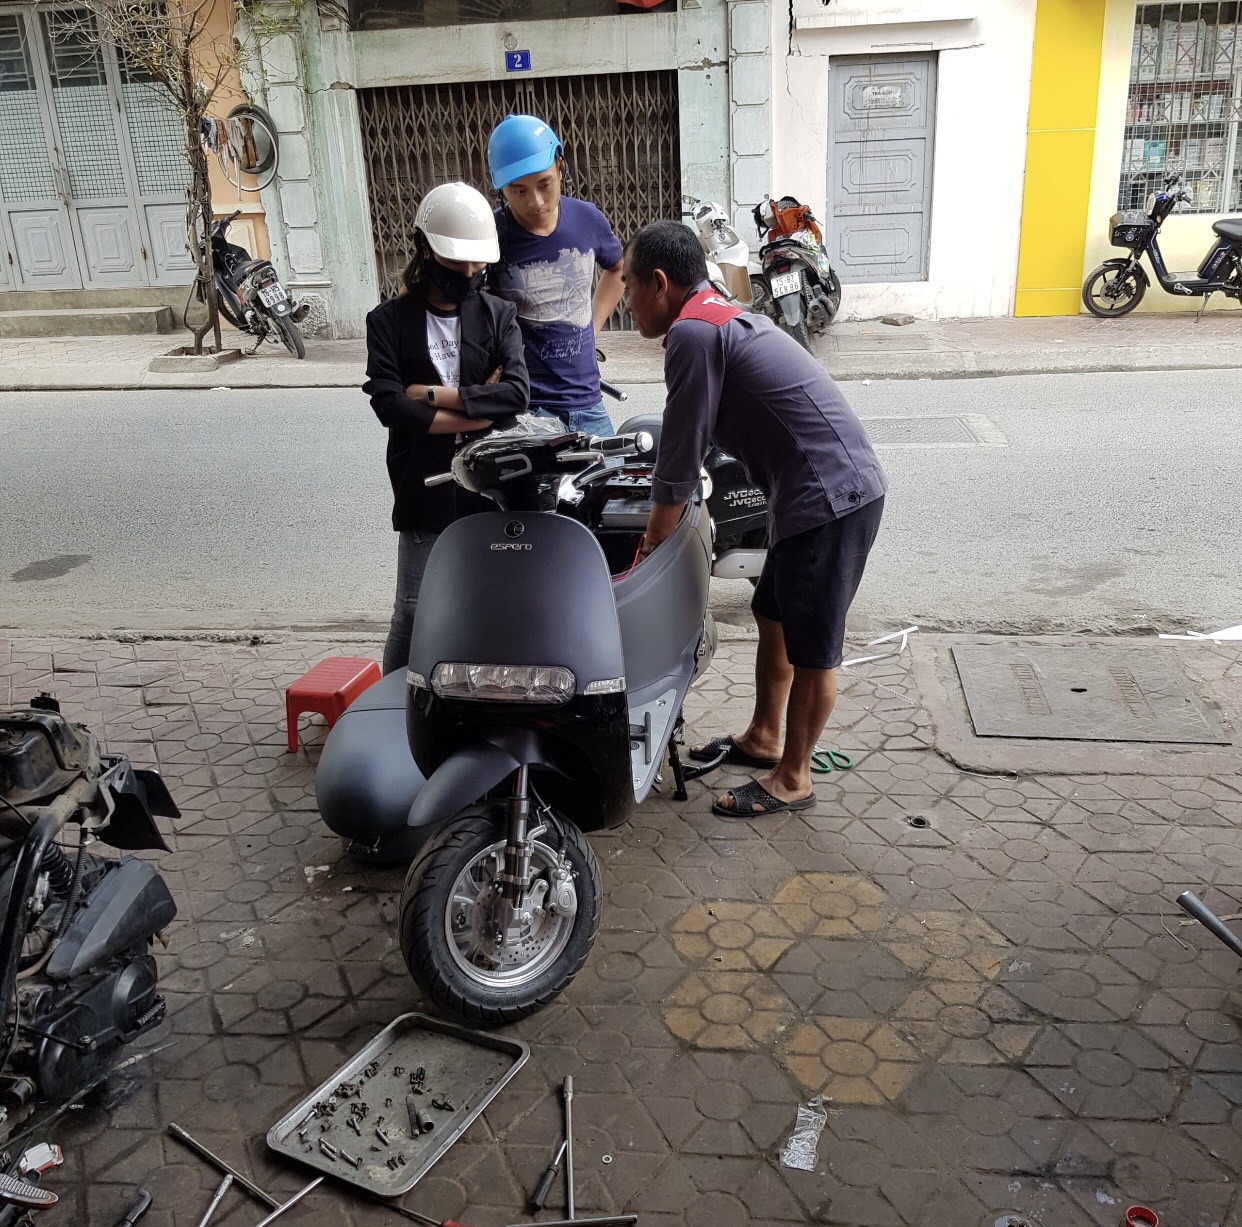 Dibao  Mua bán xe đạpxe máy điện cũ mới tại Hải Phòng  Facebook